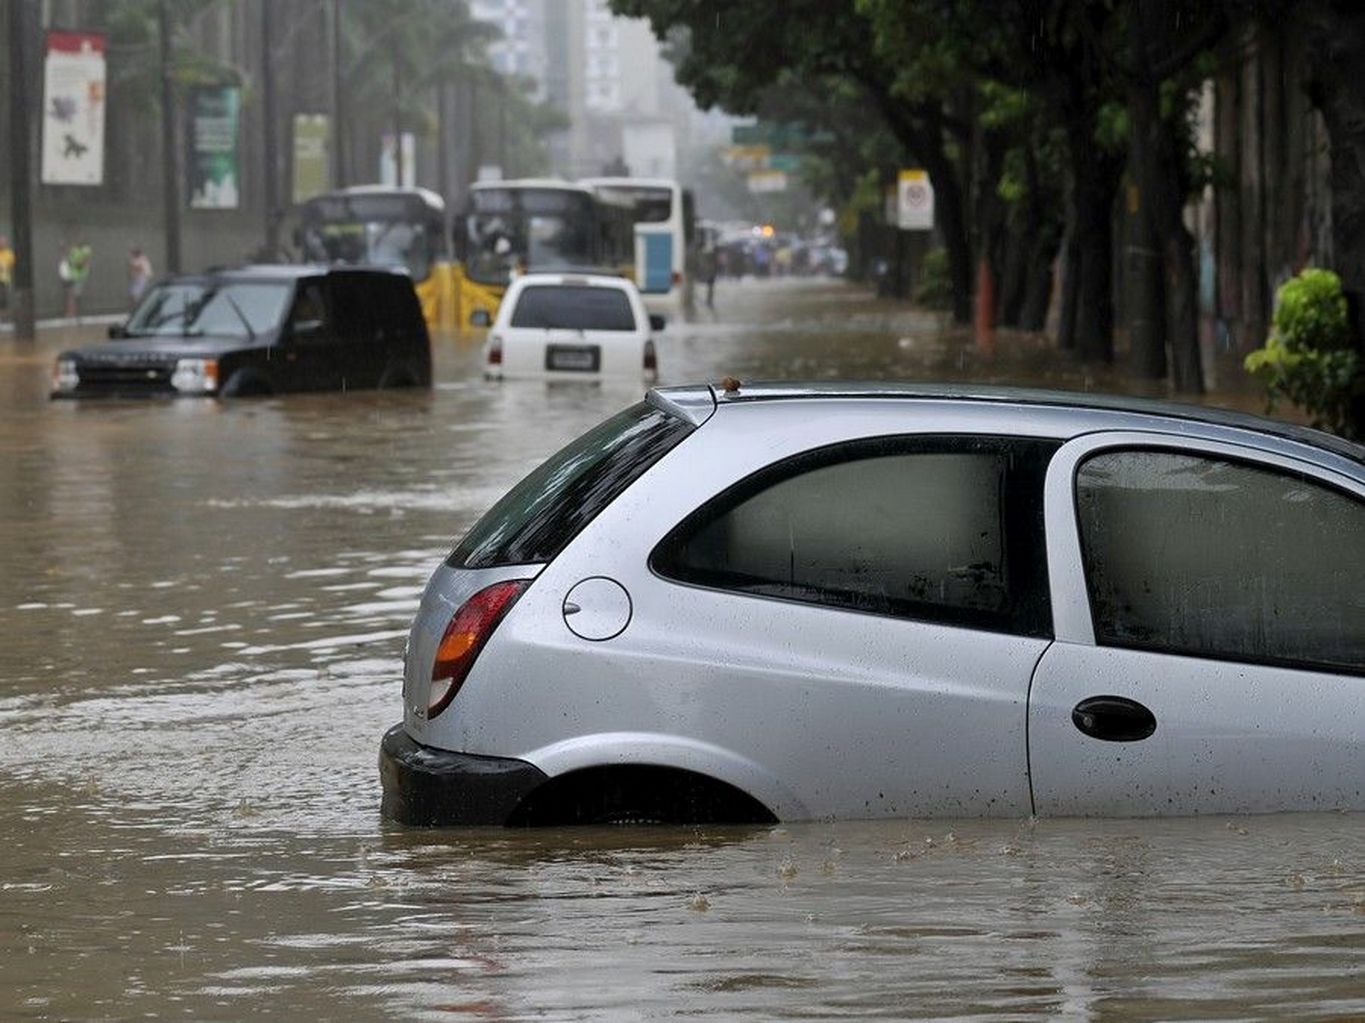 Seguro cobre danos nos carros em enchentes, mas há exceção